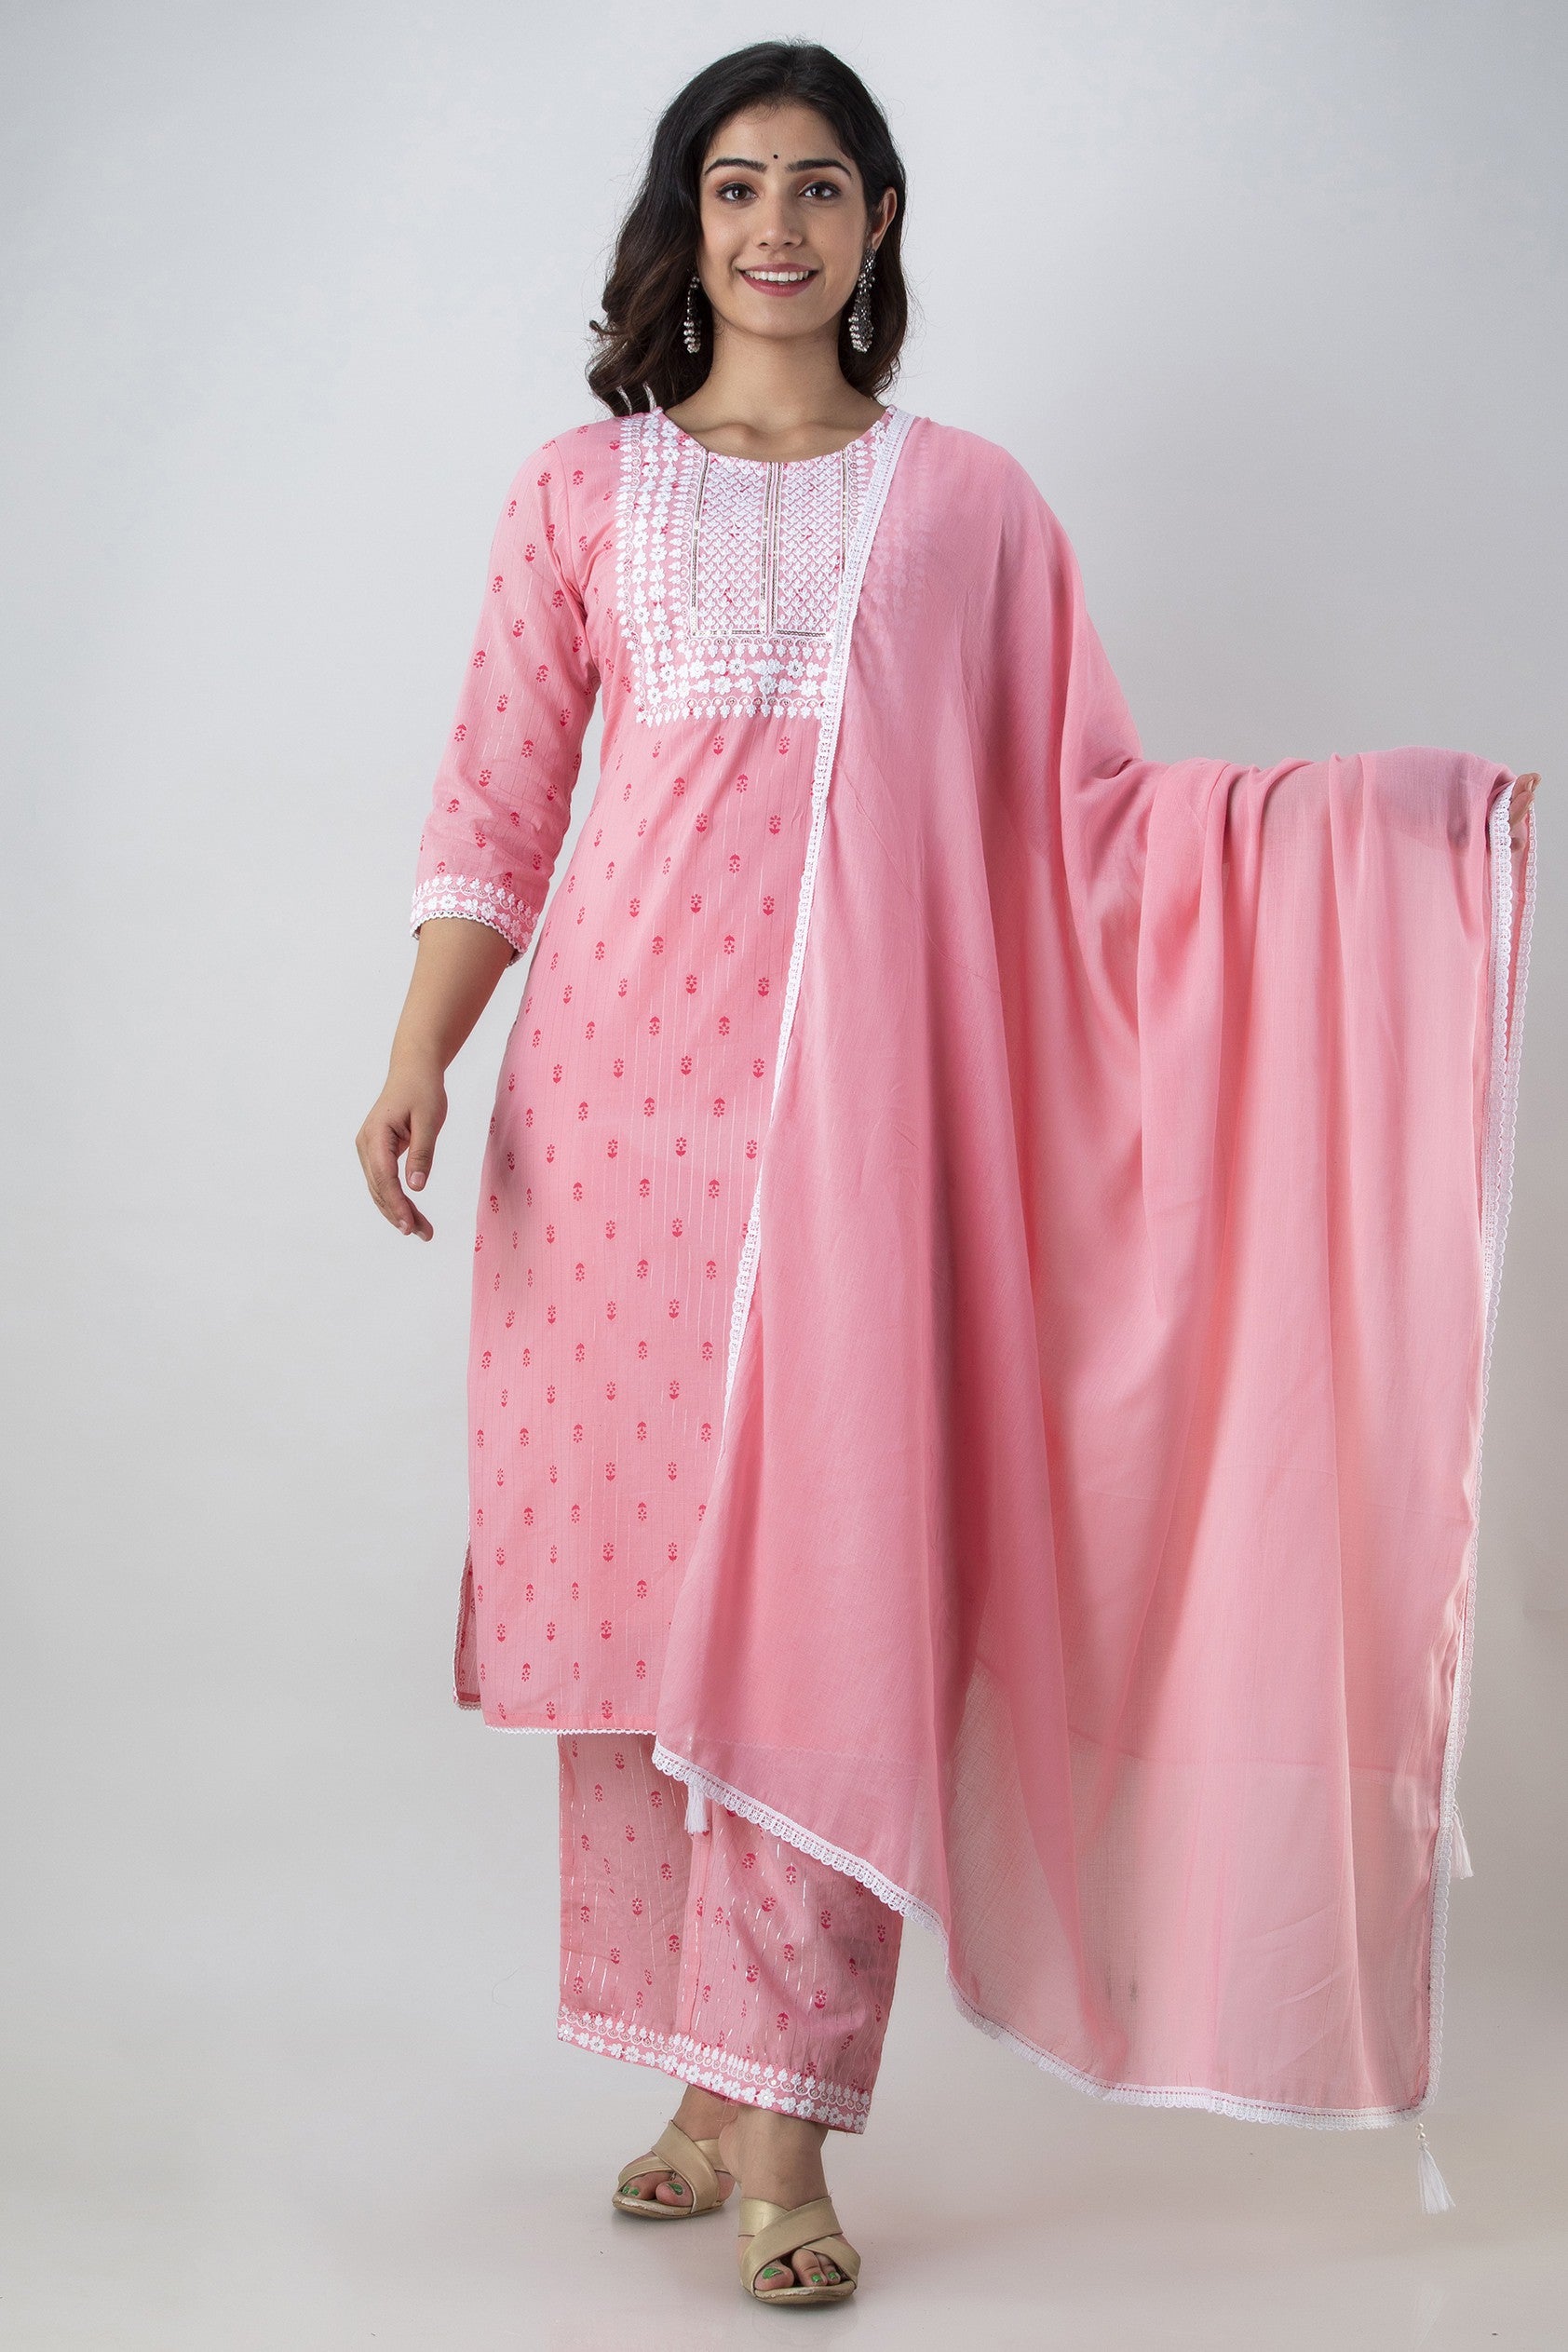 Women's Printed & Embroidered Pure Cotton Straight Kurta Palazzo & Dupatta Set (Light Pink) - Charu